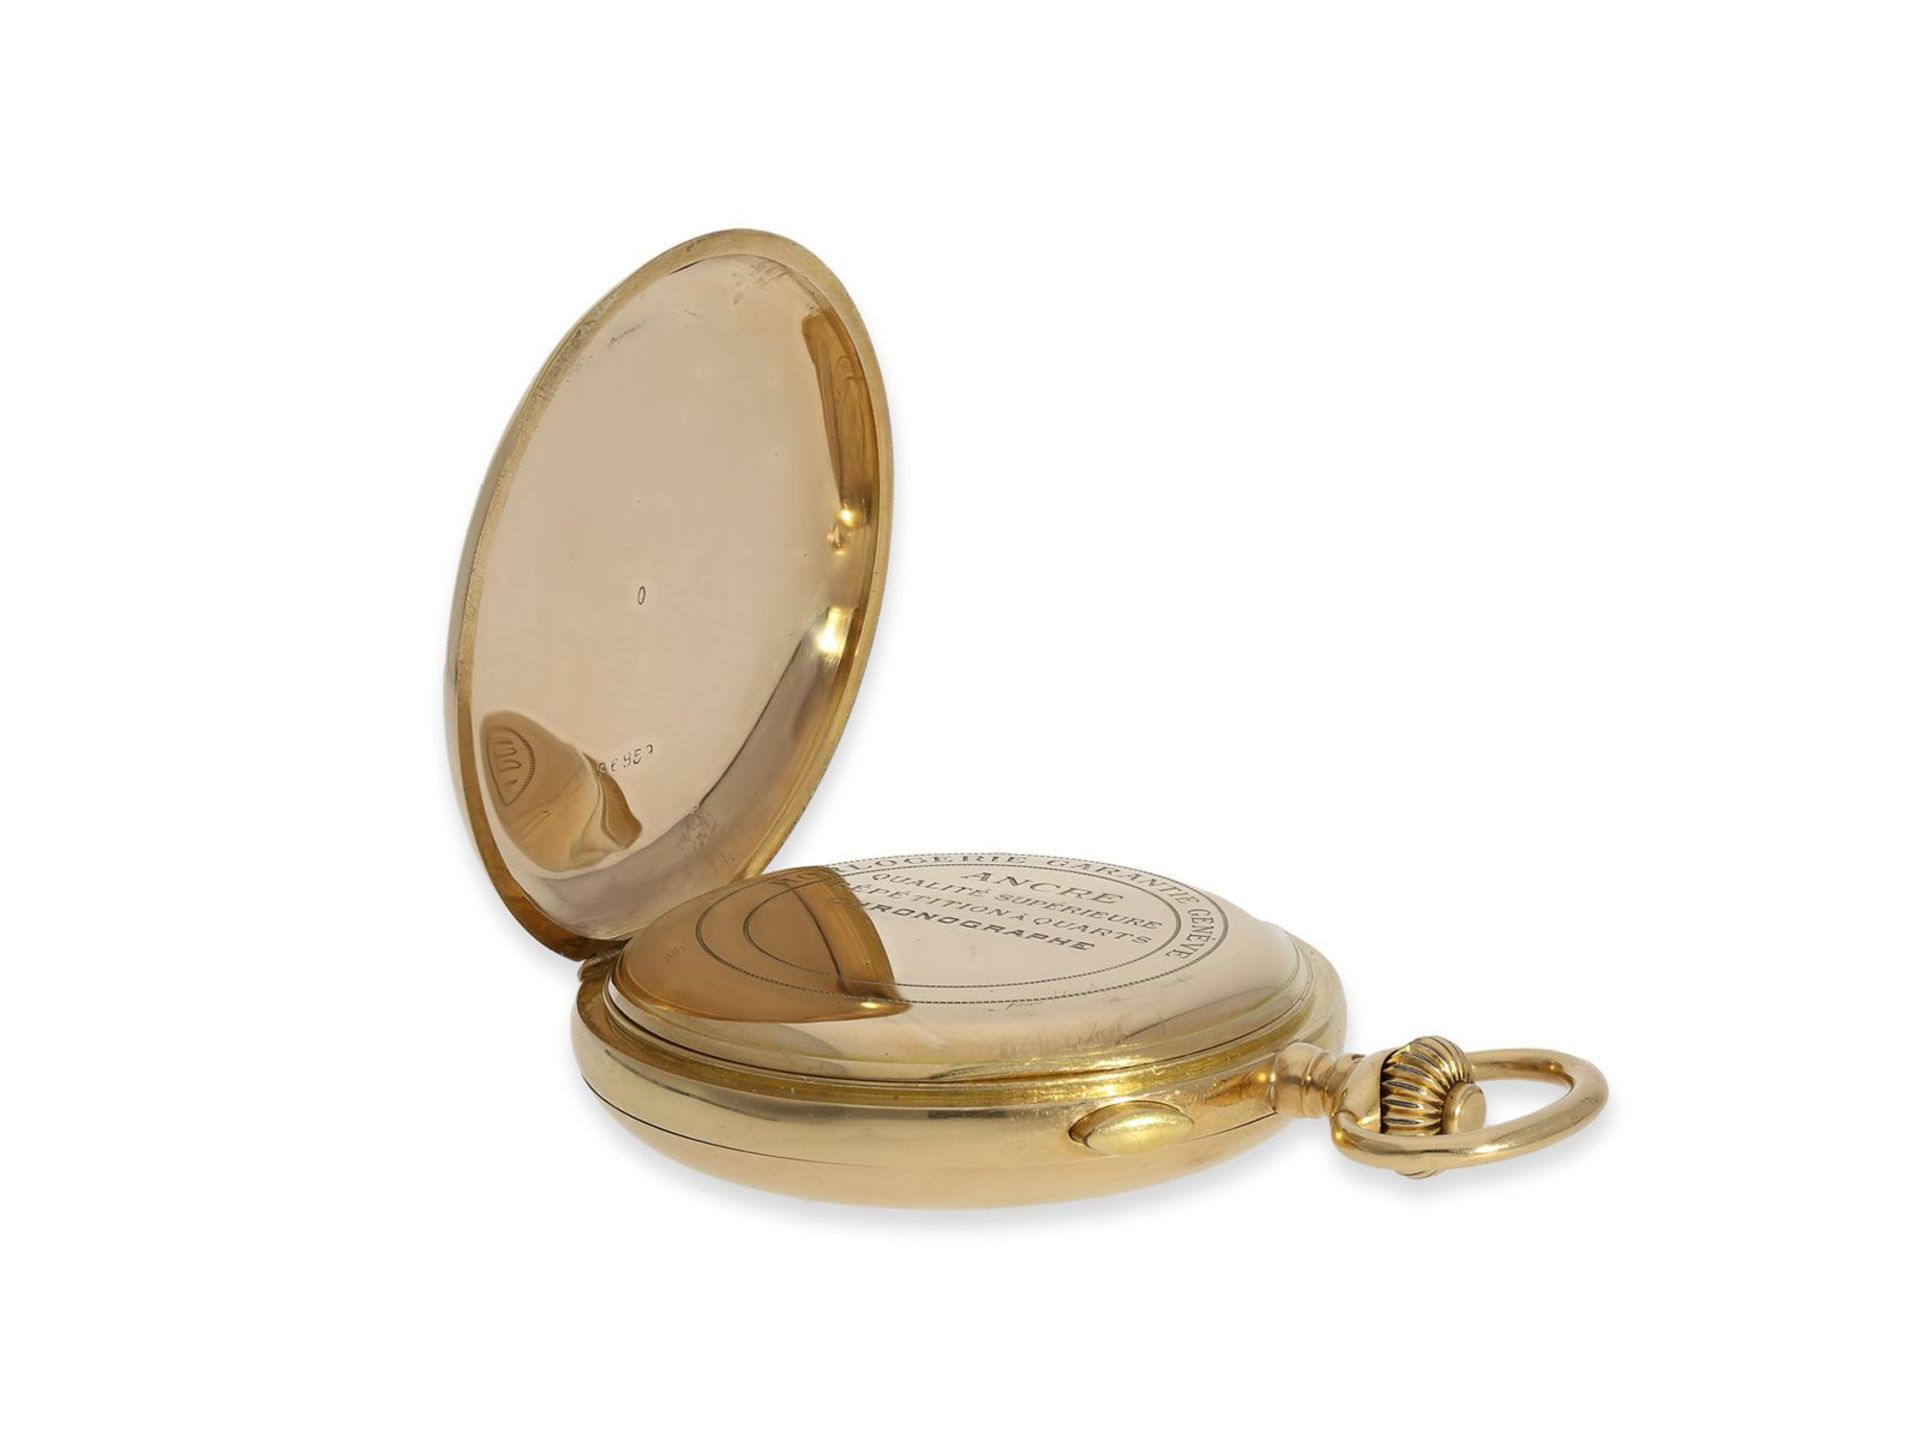 Taschenuhr: schwere rotgoldene Savonnette mit Repetition und Chronograph, 18K Gold, signiert Horloge - Image 8 of 12